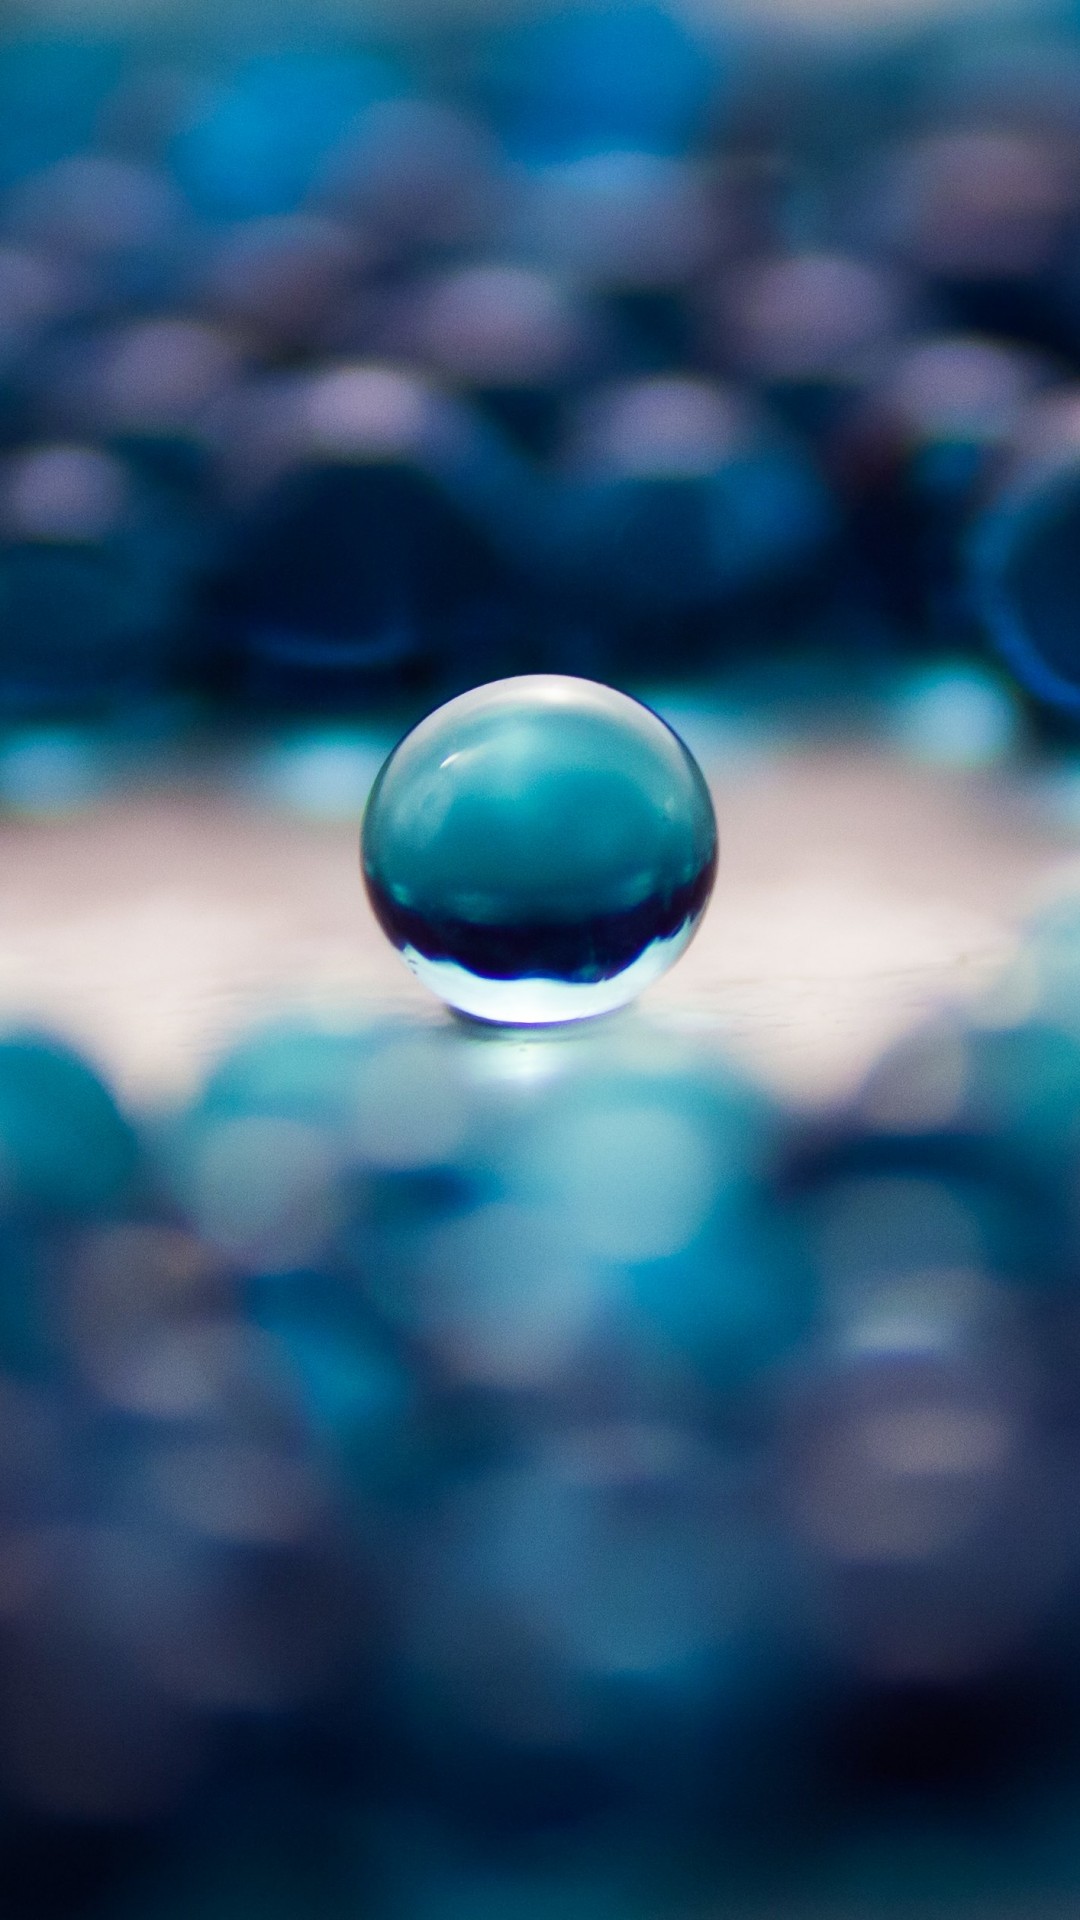 Water Balls Wallpaper for Google Nexus 5